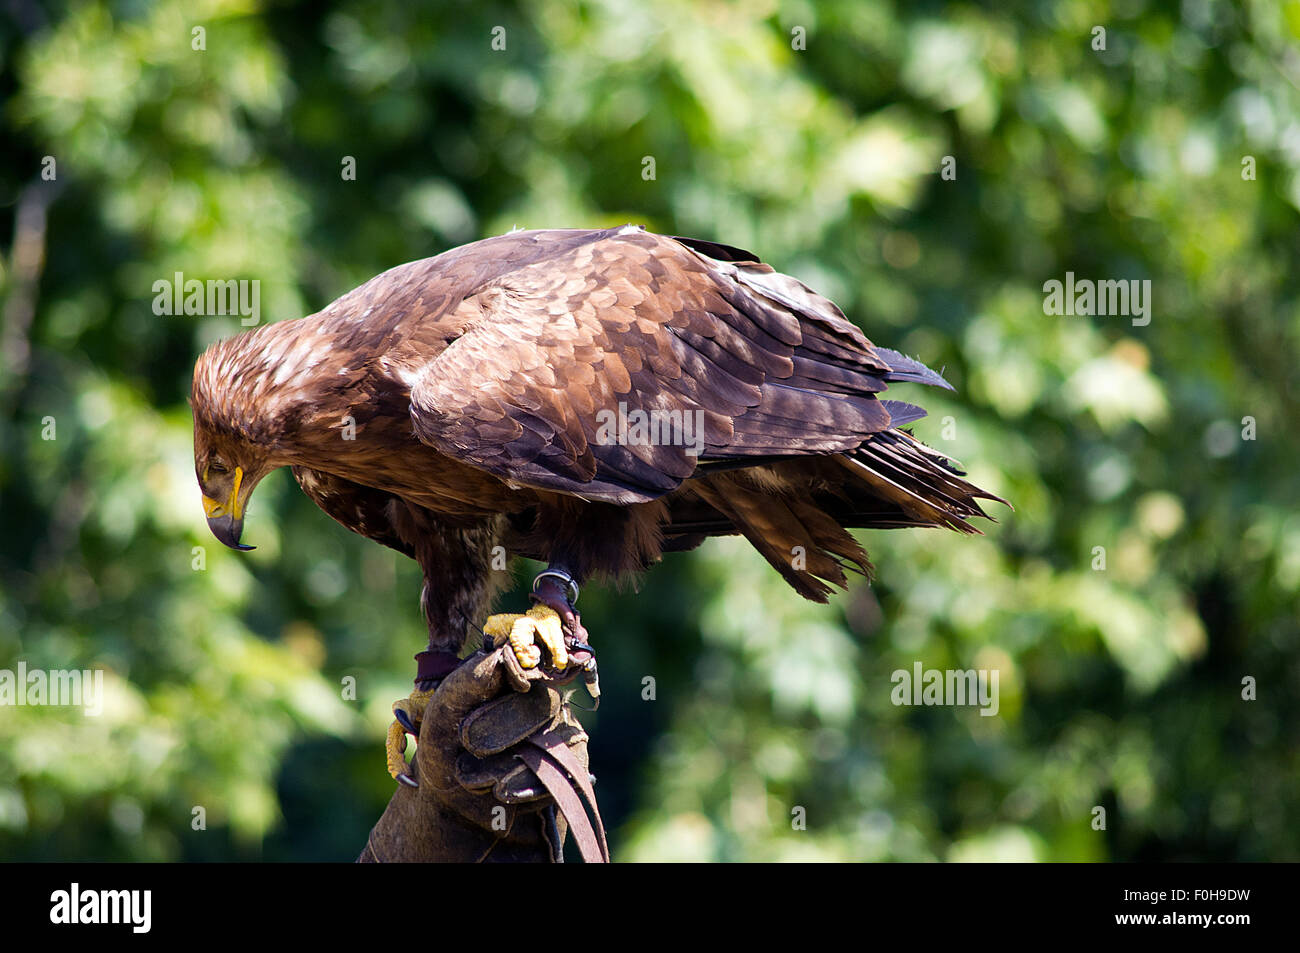 eagle wildlife rapacious animal Stock Photo